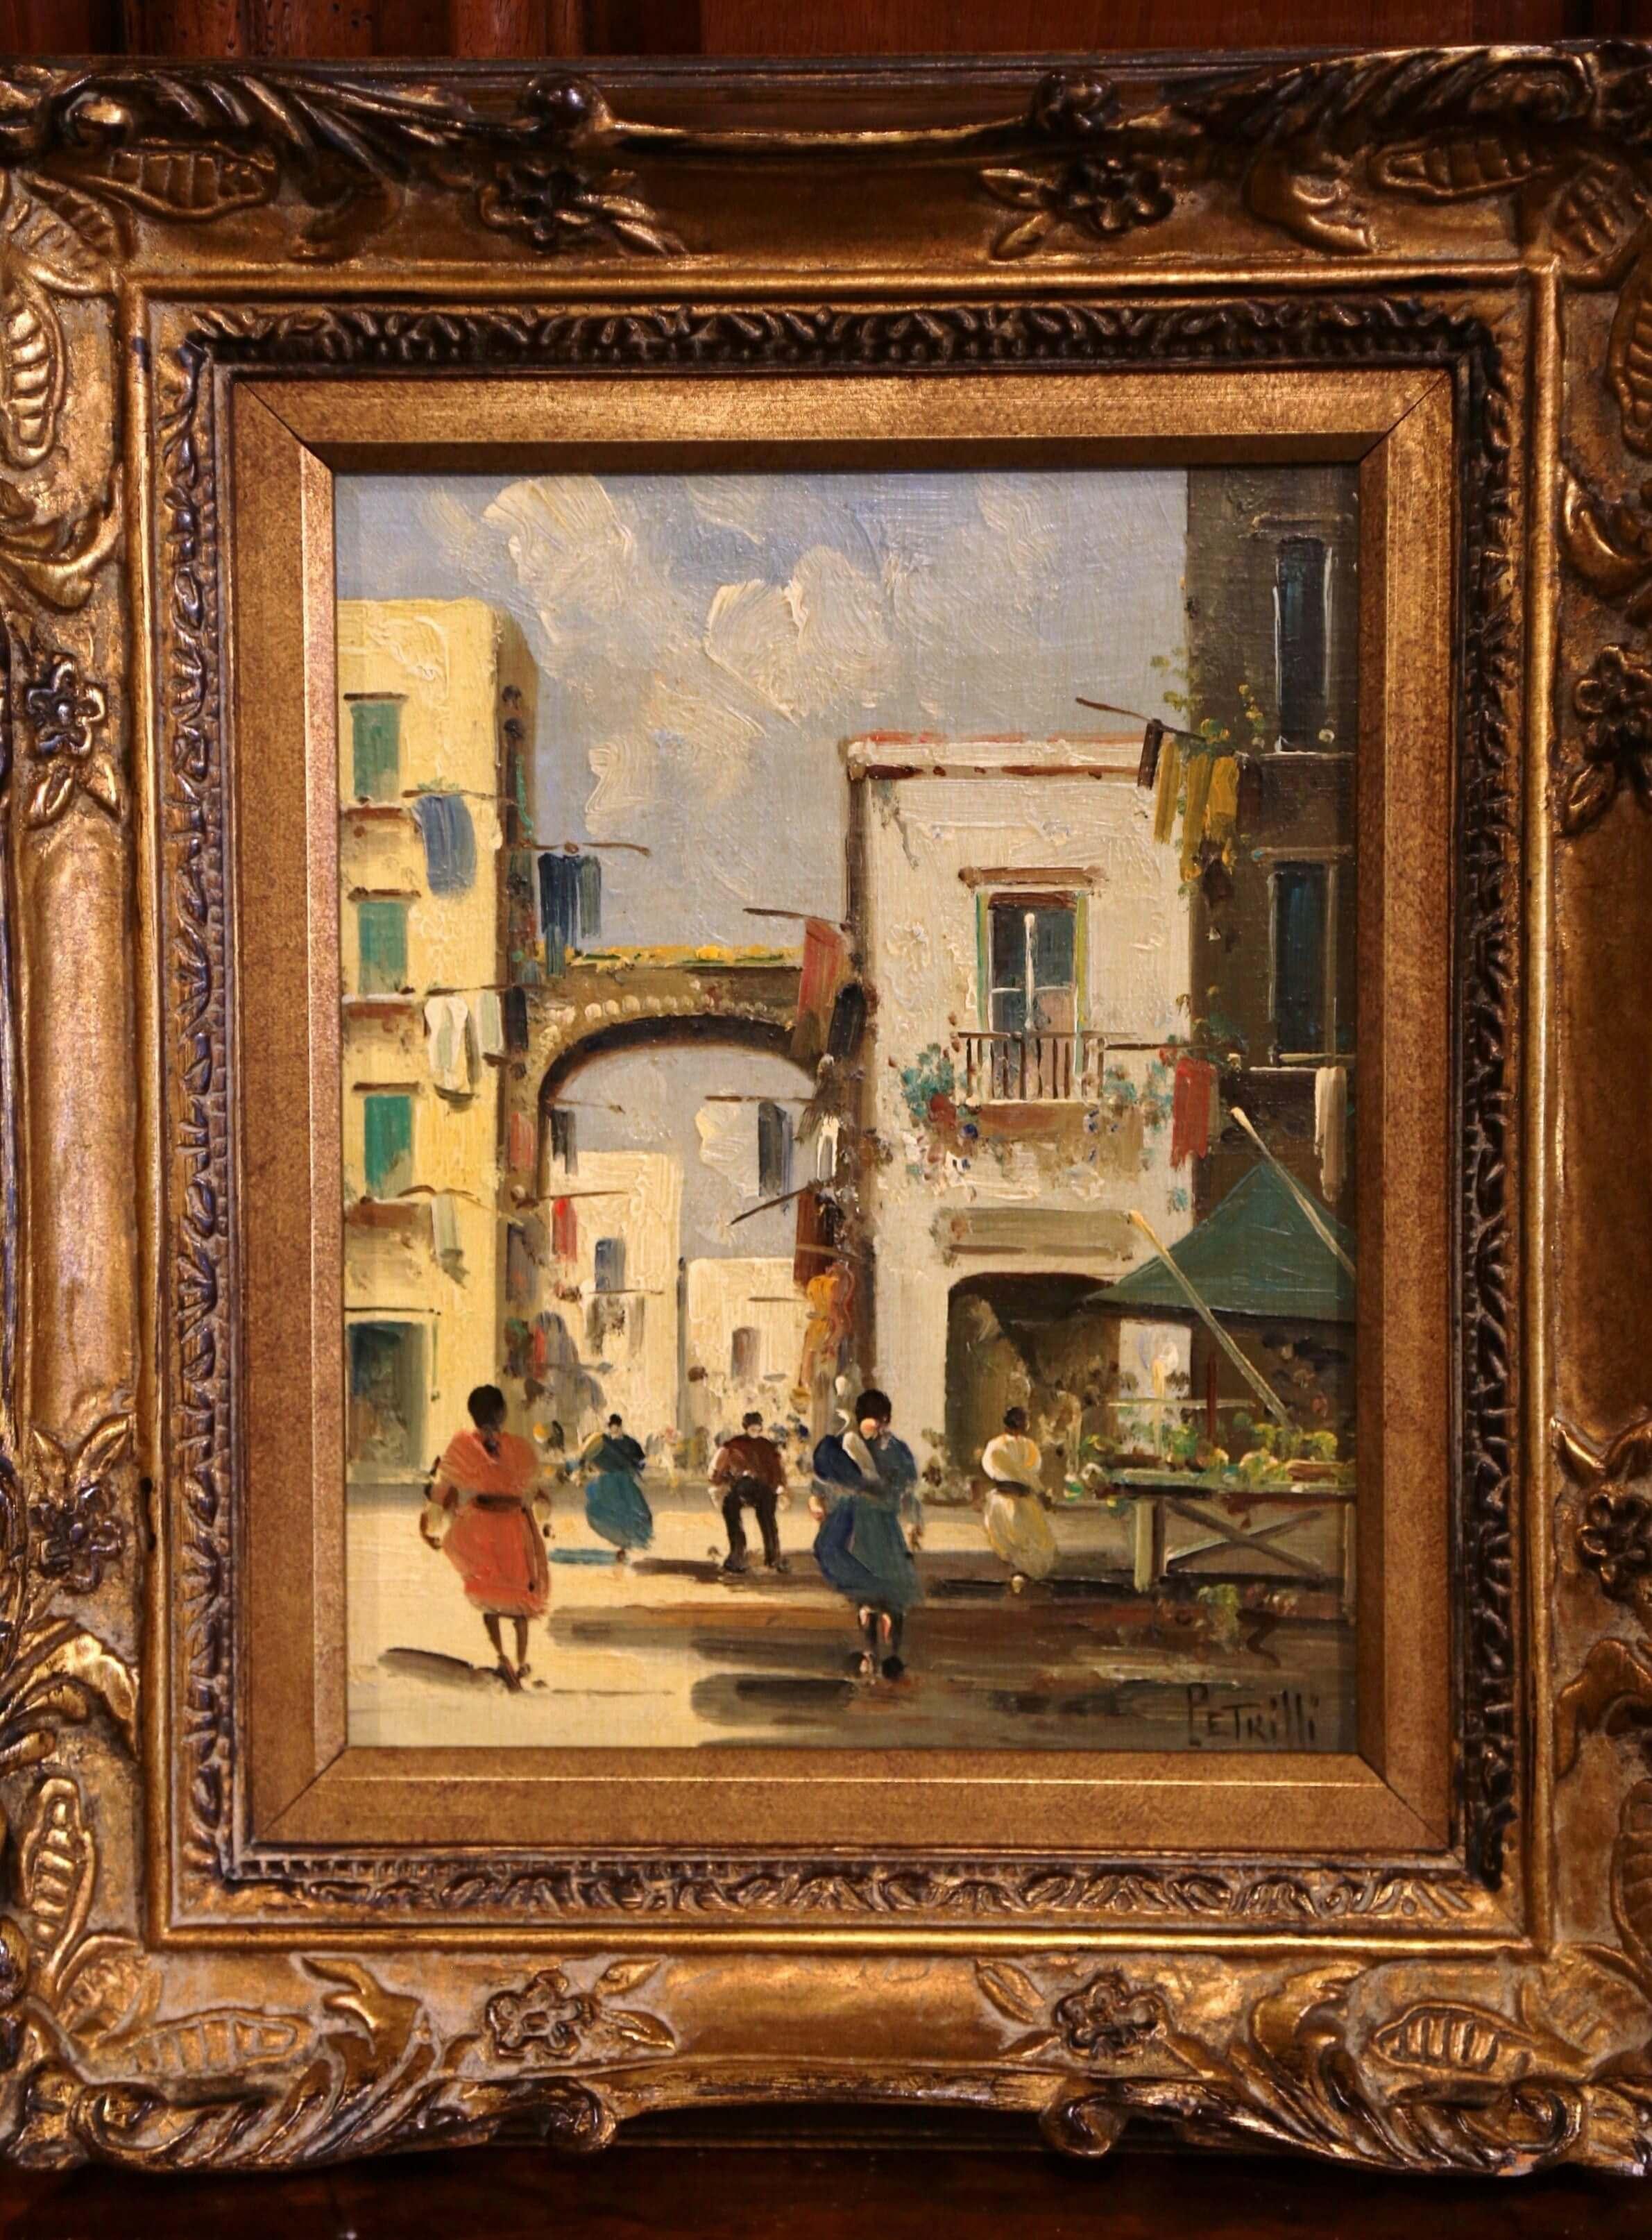 Cette peinture à l'huile sur toile a été réalisée en Italie, vers 1920. Placée dans le cadre doré sculpté d'origine, cette peinture représente une scène de ville européenne animée par des gens marchant dans la rue. Les bâtiments et les figures